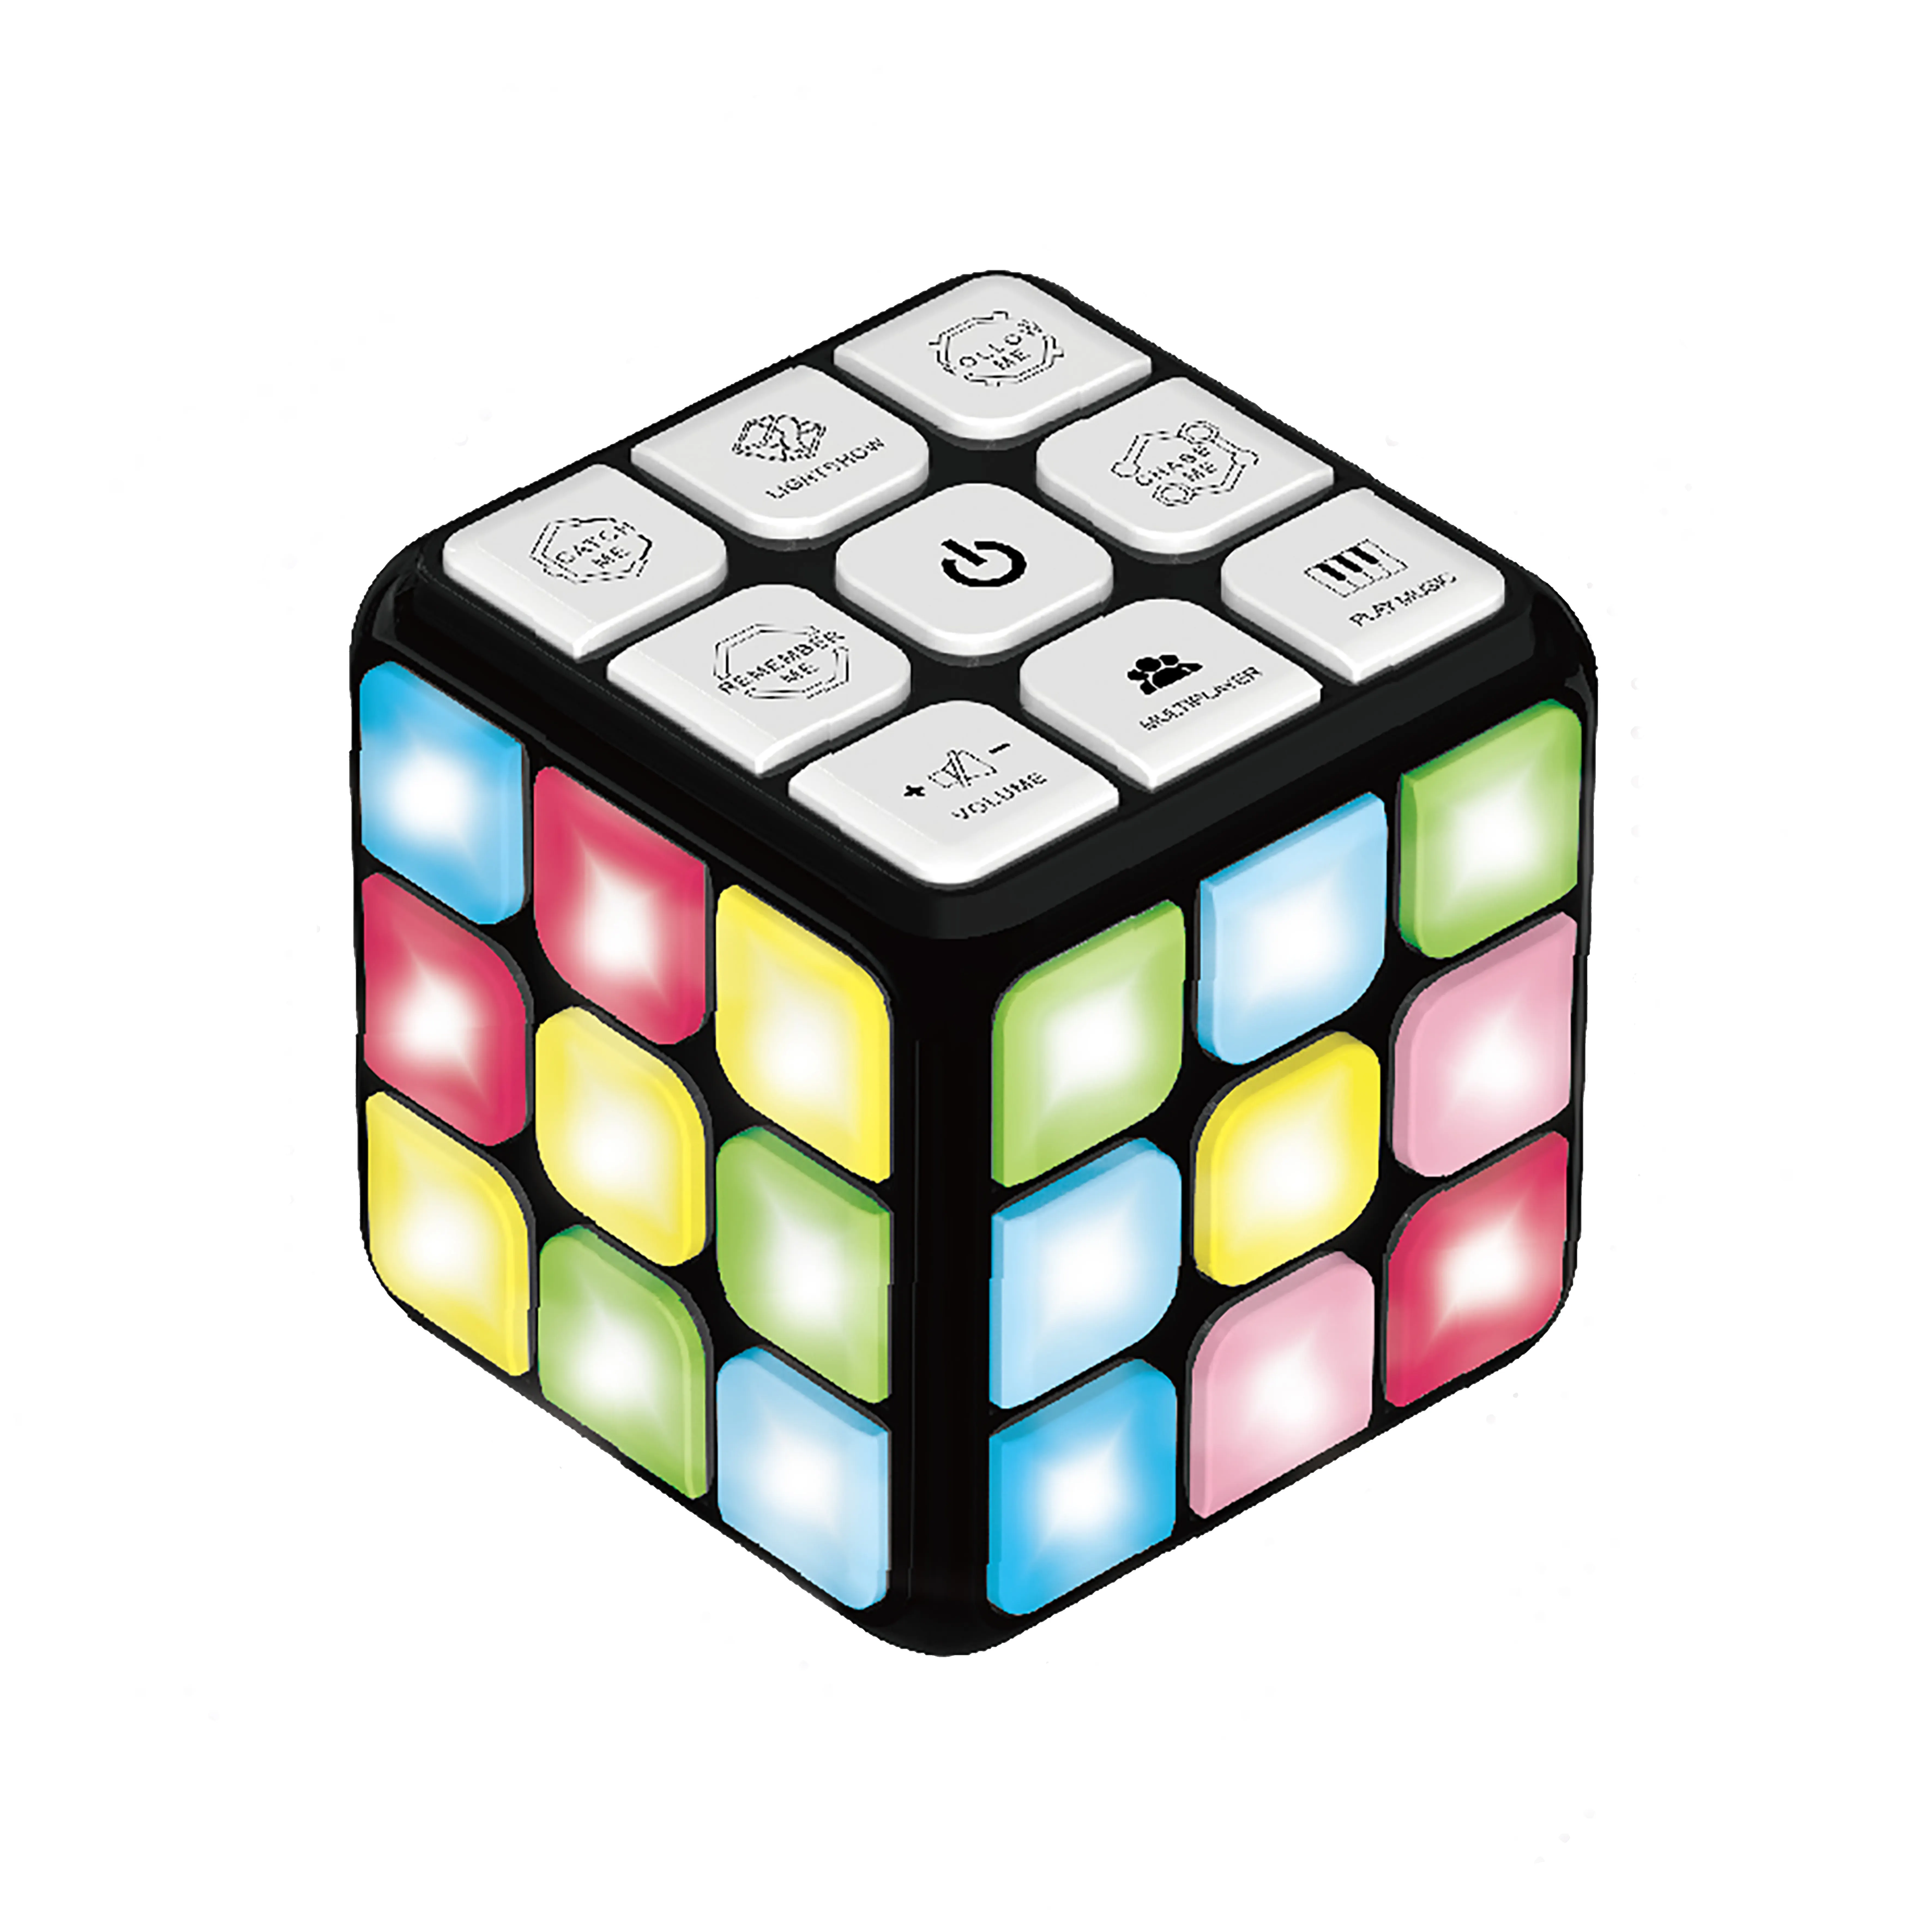 Cubo Musical operado por batería para niños, juguete antiestrés, 7 juegos, otros juguetes educativos, cubo mágico LED